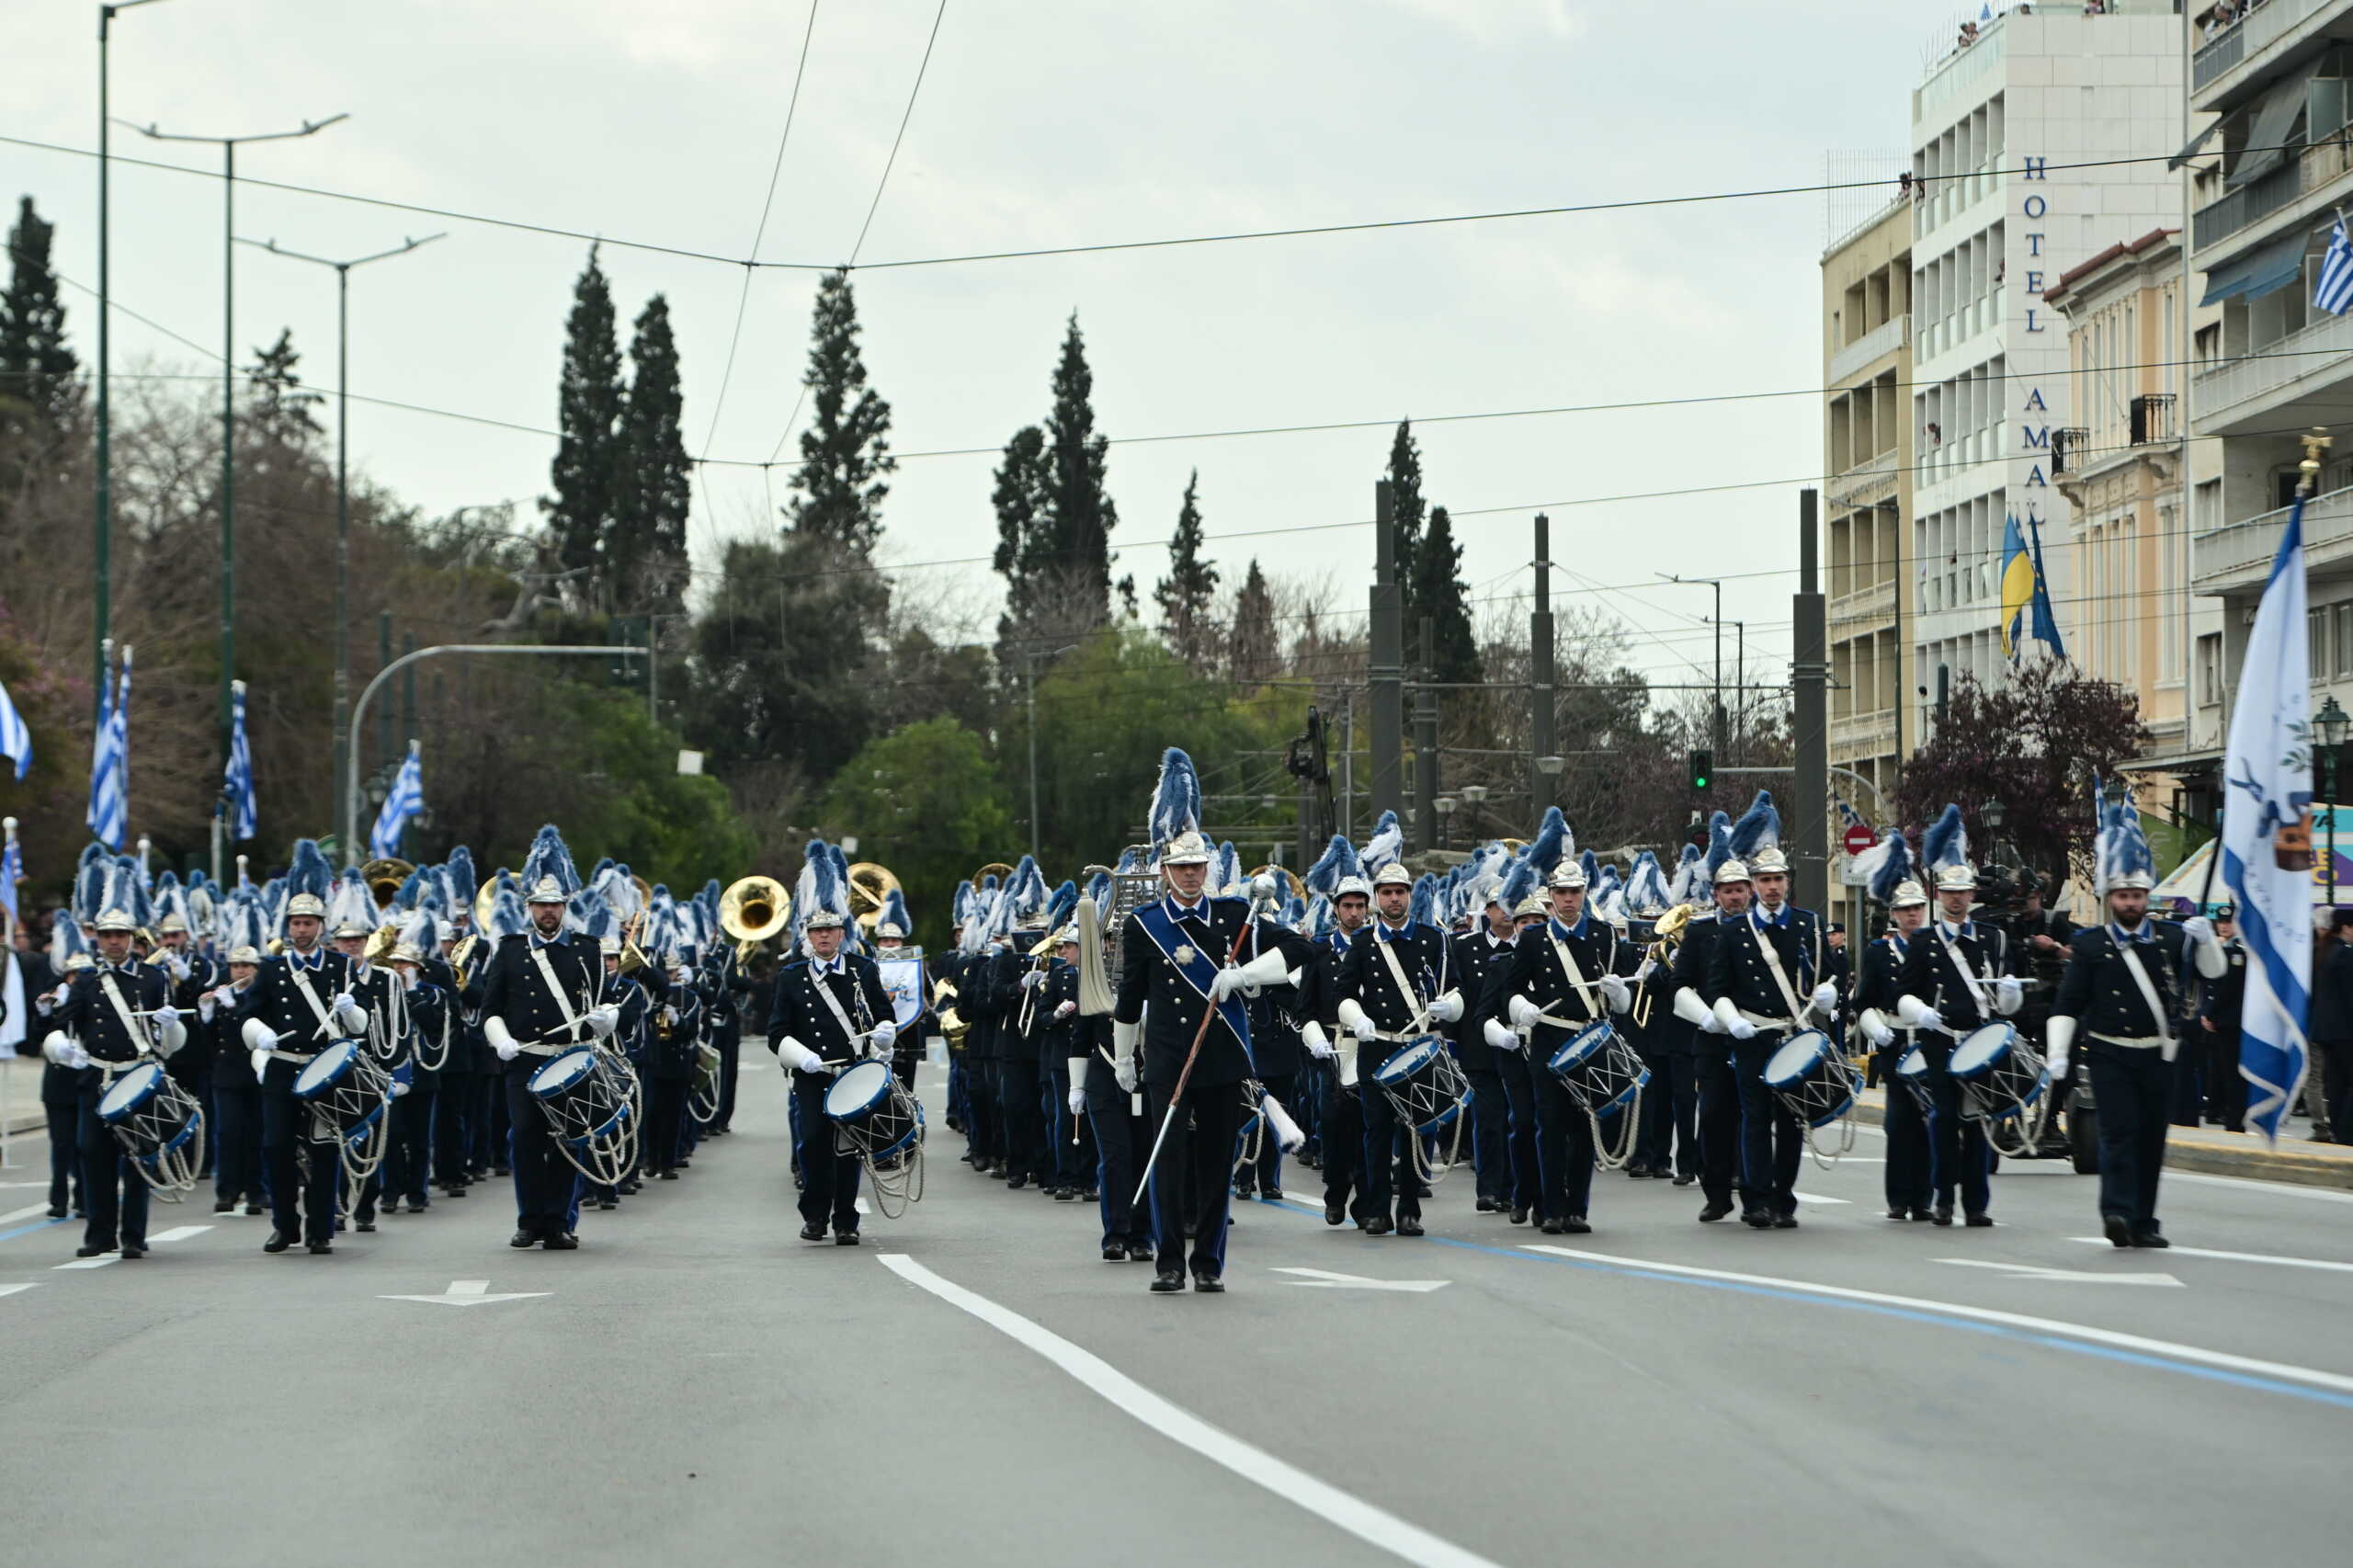 25η Μαρτίου: Η Φιλαρμονική «Μάντζαρος» από την Κέρκυρα στην στρατιωτική παρέλαση της Αθήνας